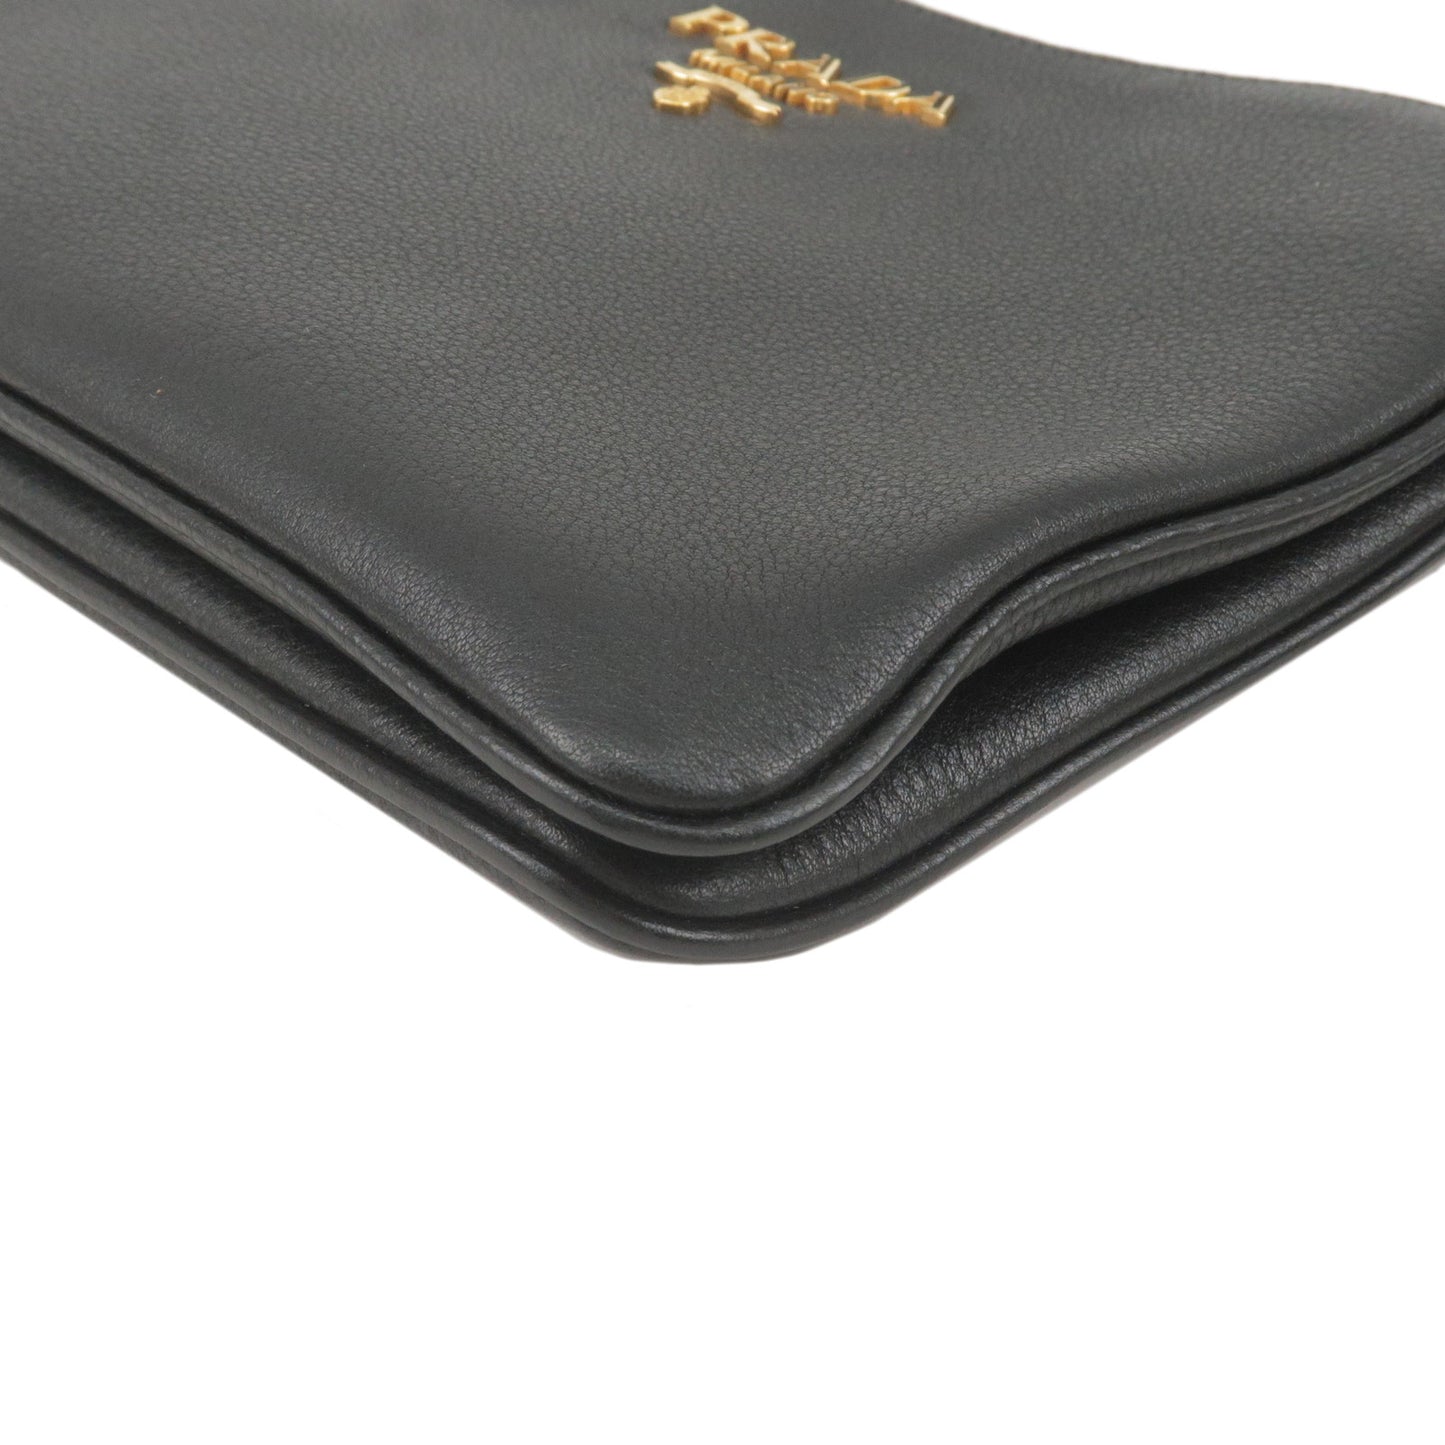 PRADA Logo Leather Shoulder Bag Gold Hardware Black 1BH046